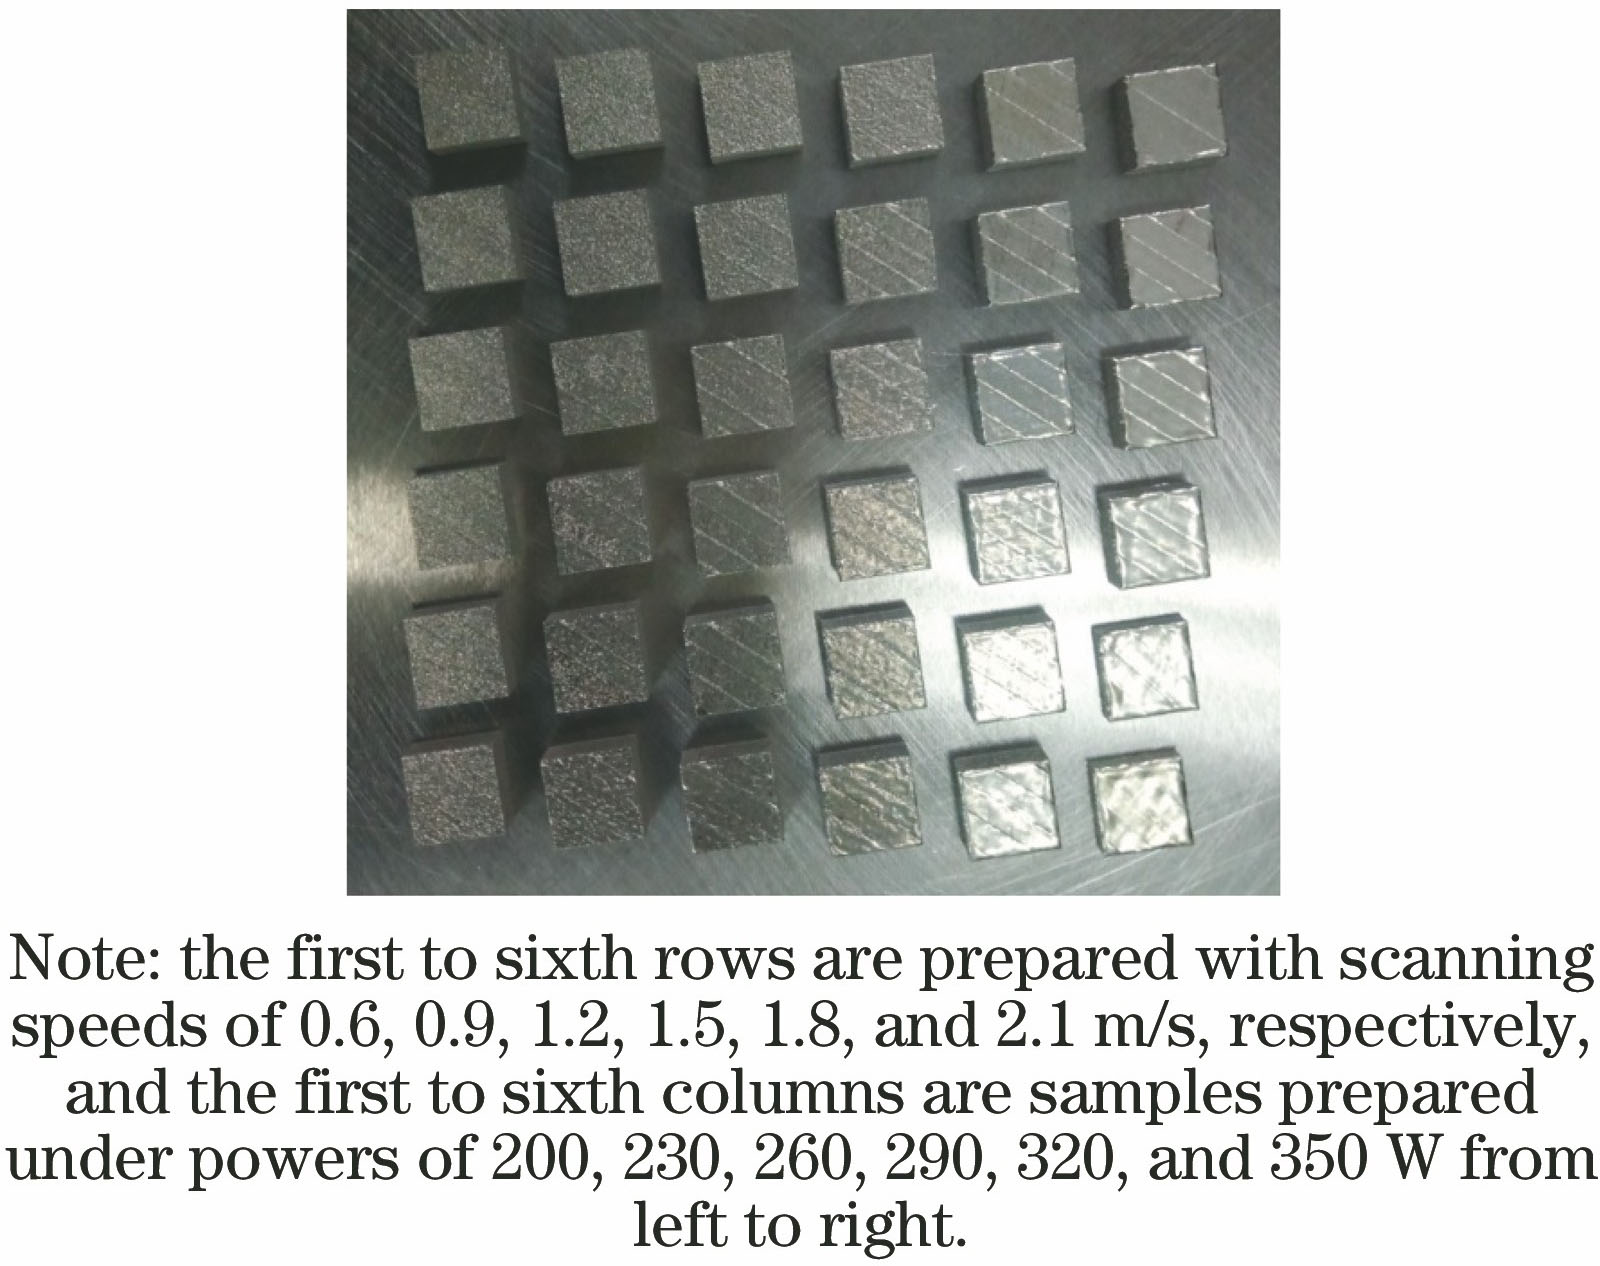 Test specimens of GH4169 alloy formed by SLM